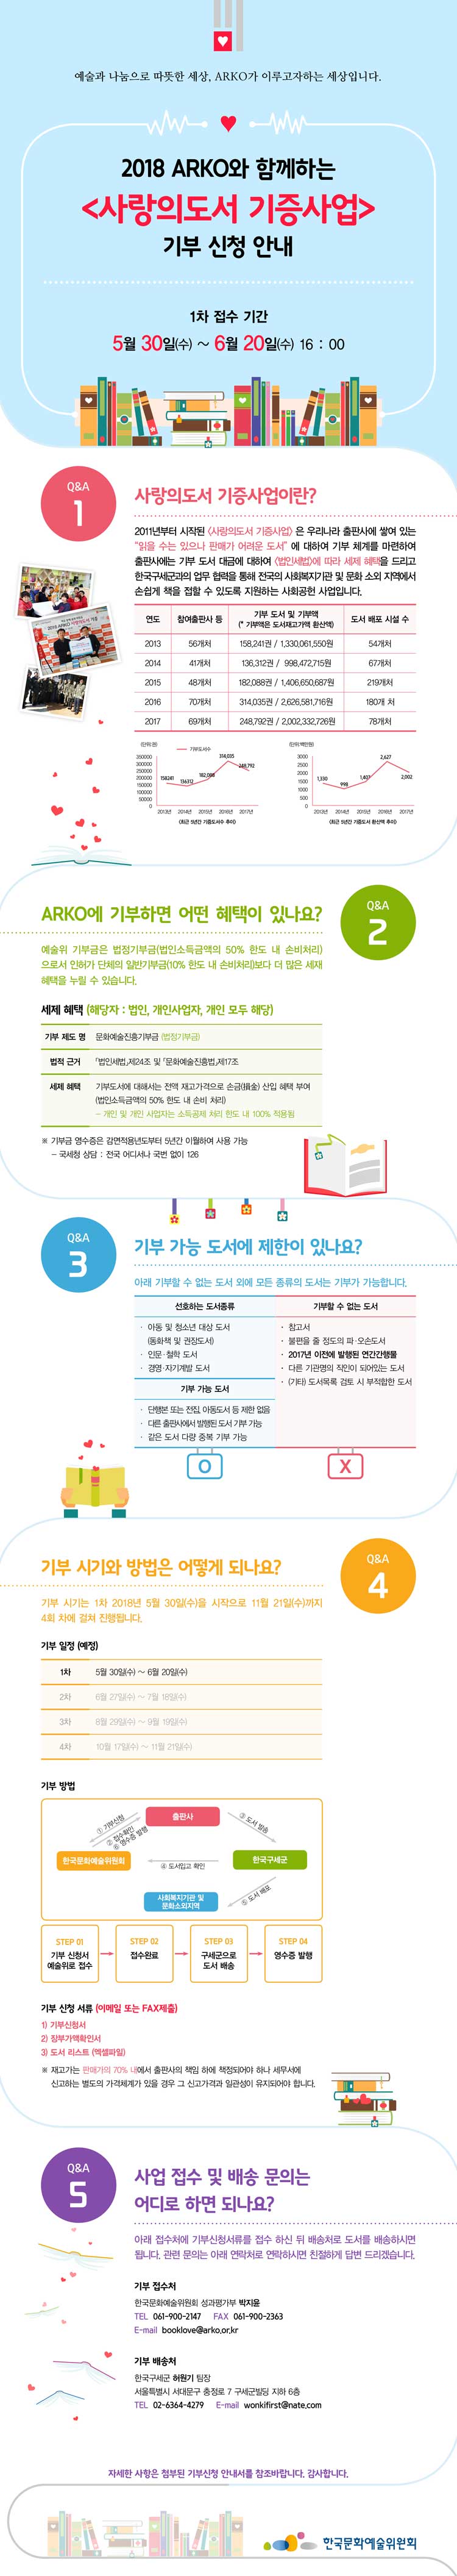 2018 arko와 함께하는 사랑의 도서 기증사업 기부신청안내 1차 접수 기간 _ 5월 30일 (수)~6월 20일 (수) 16:00 